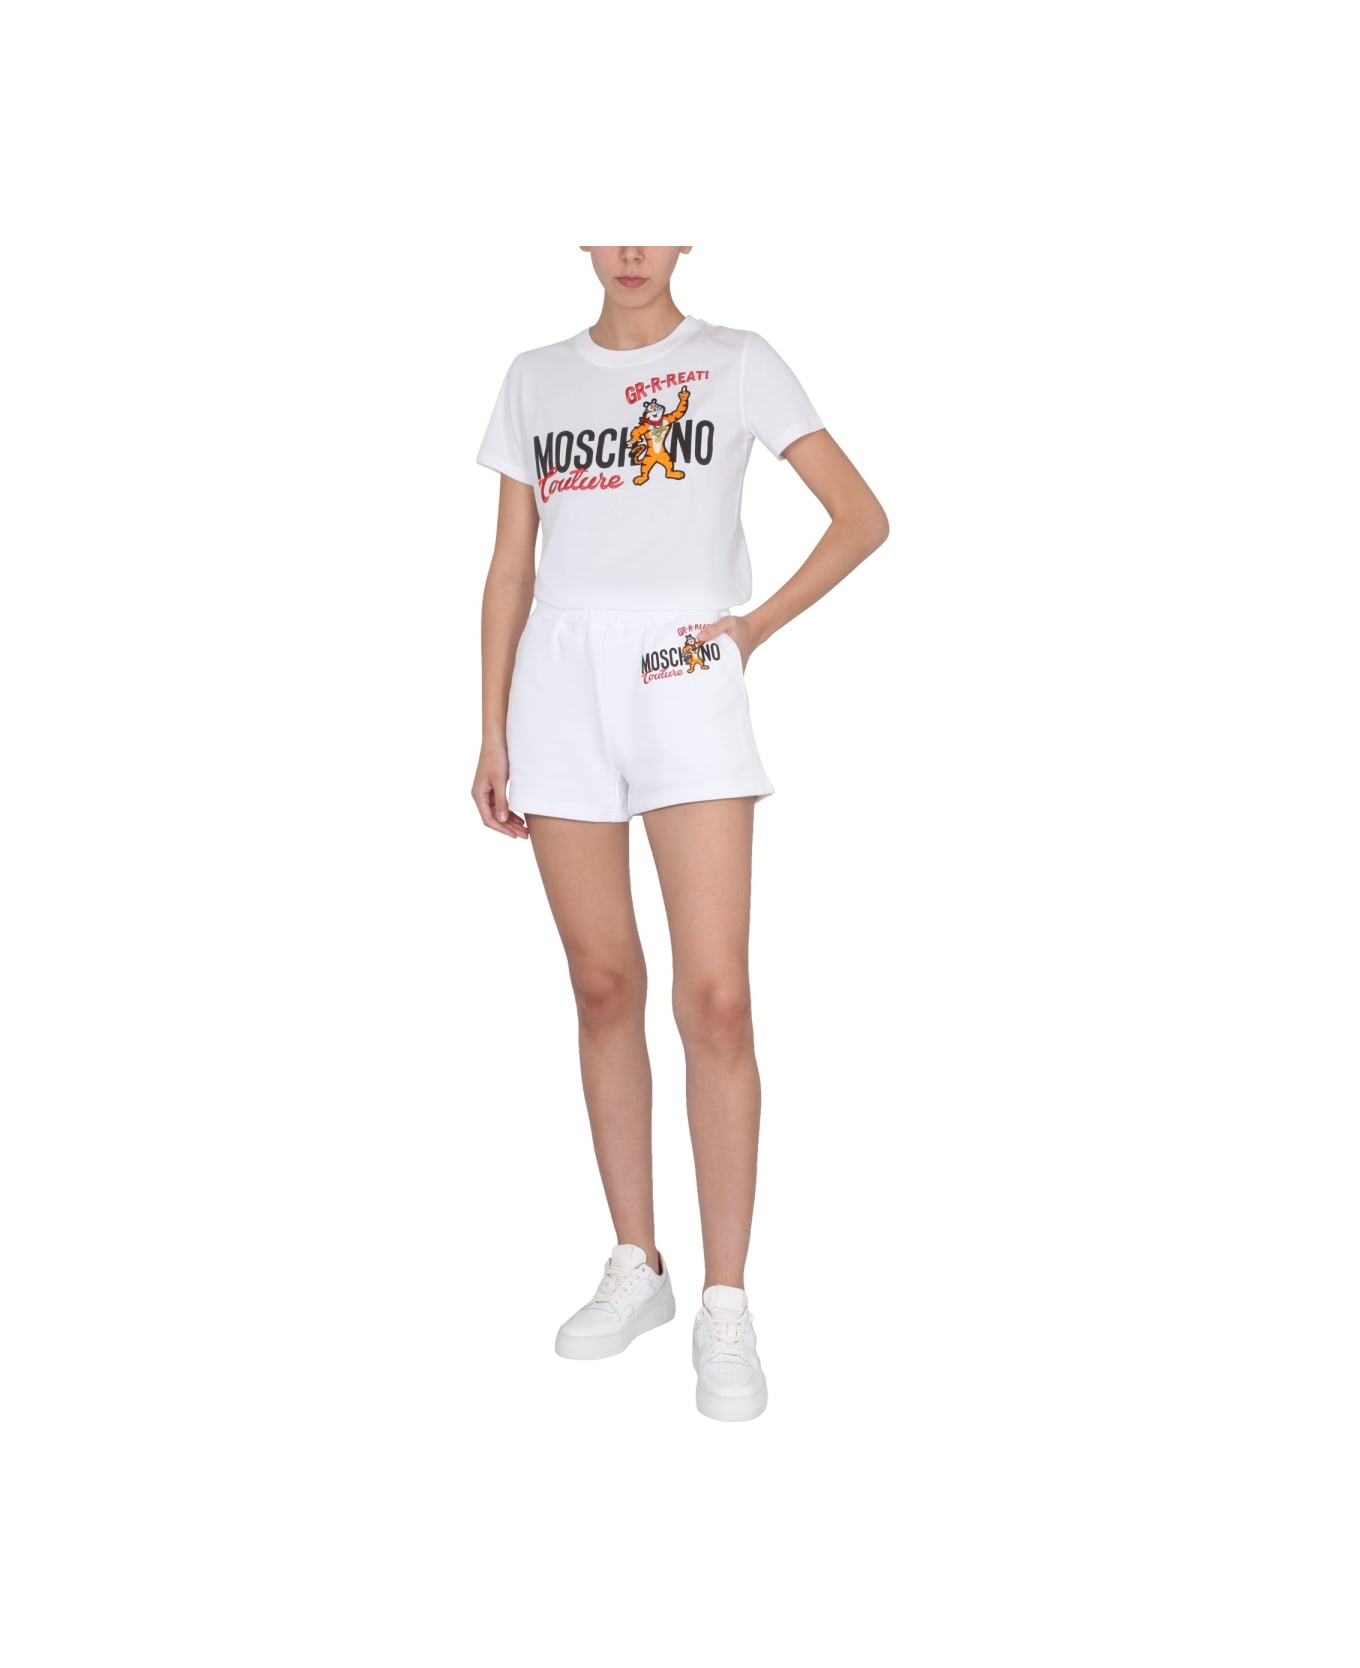 Moschino X Kellogg's Shorts - WHITE ショートパンツ